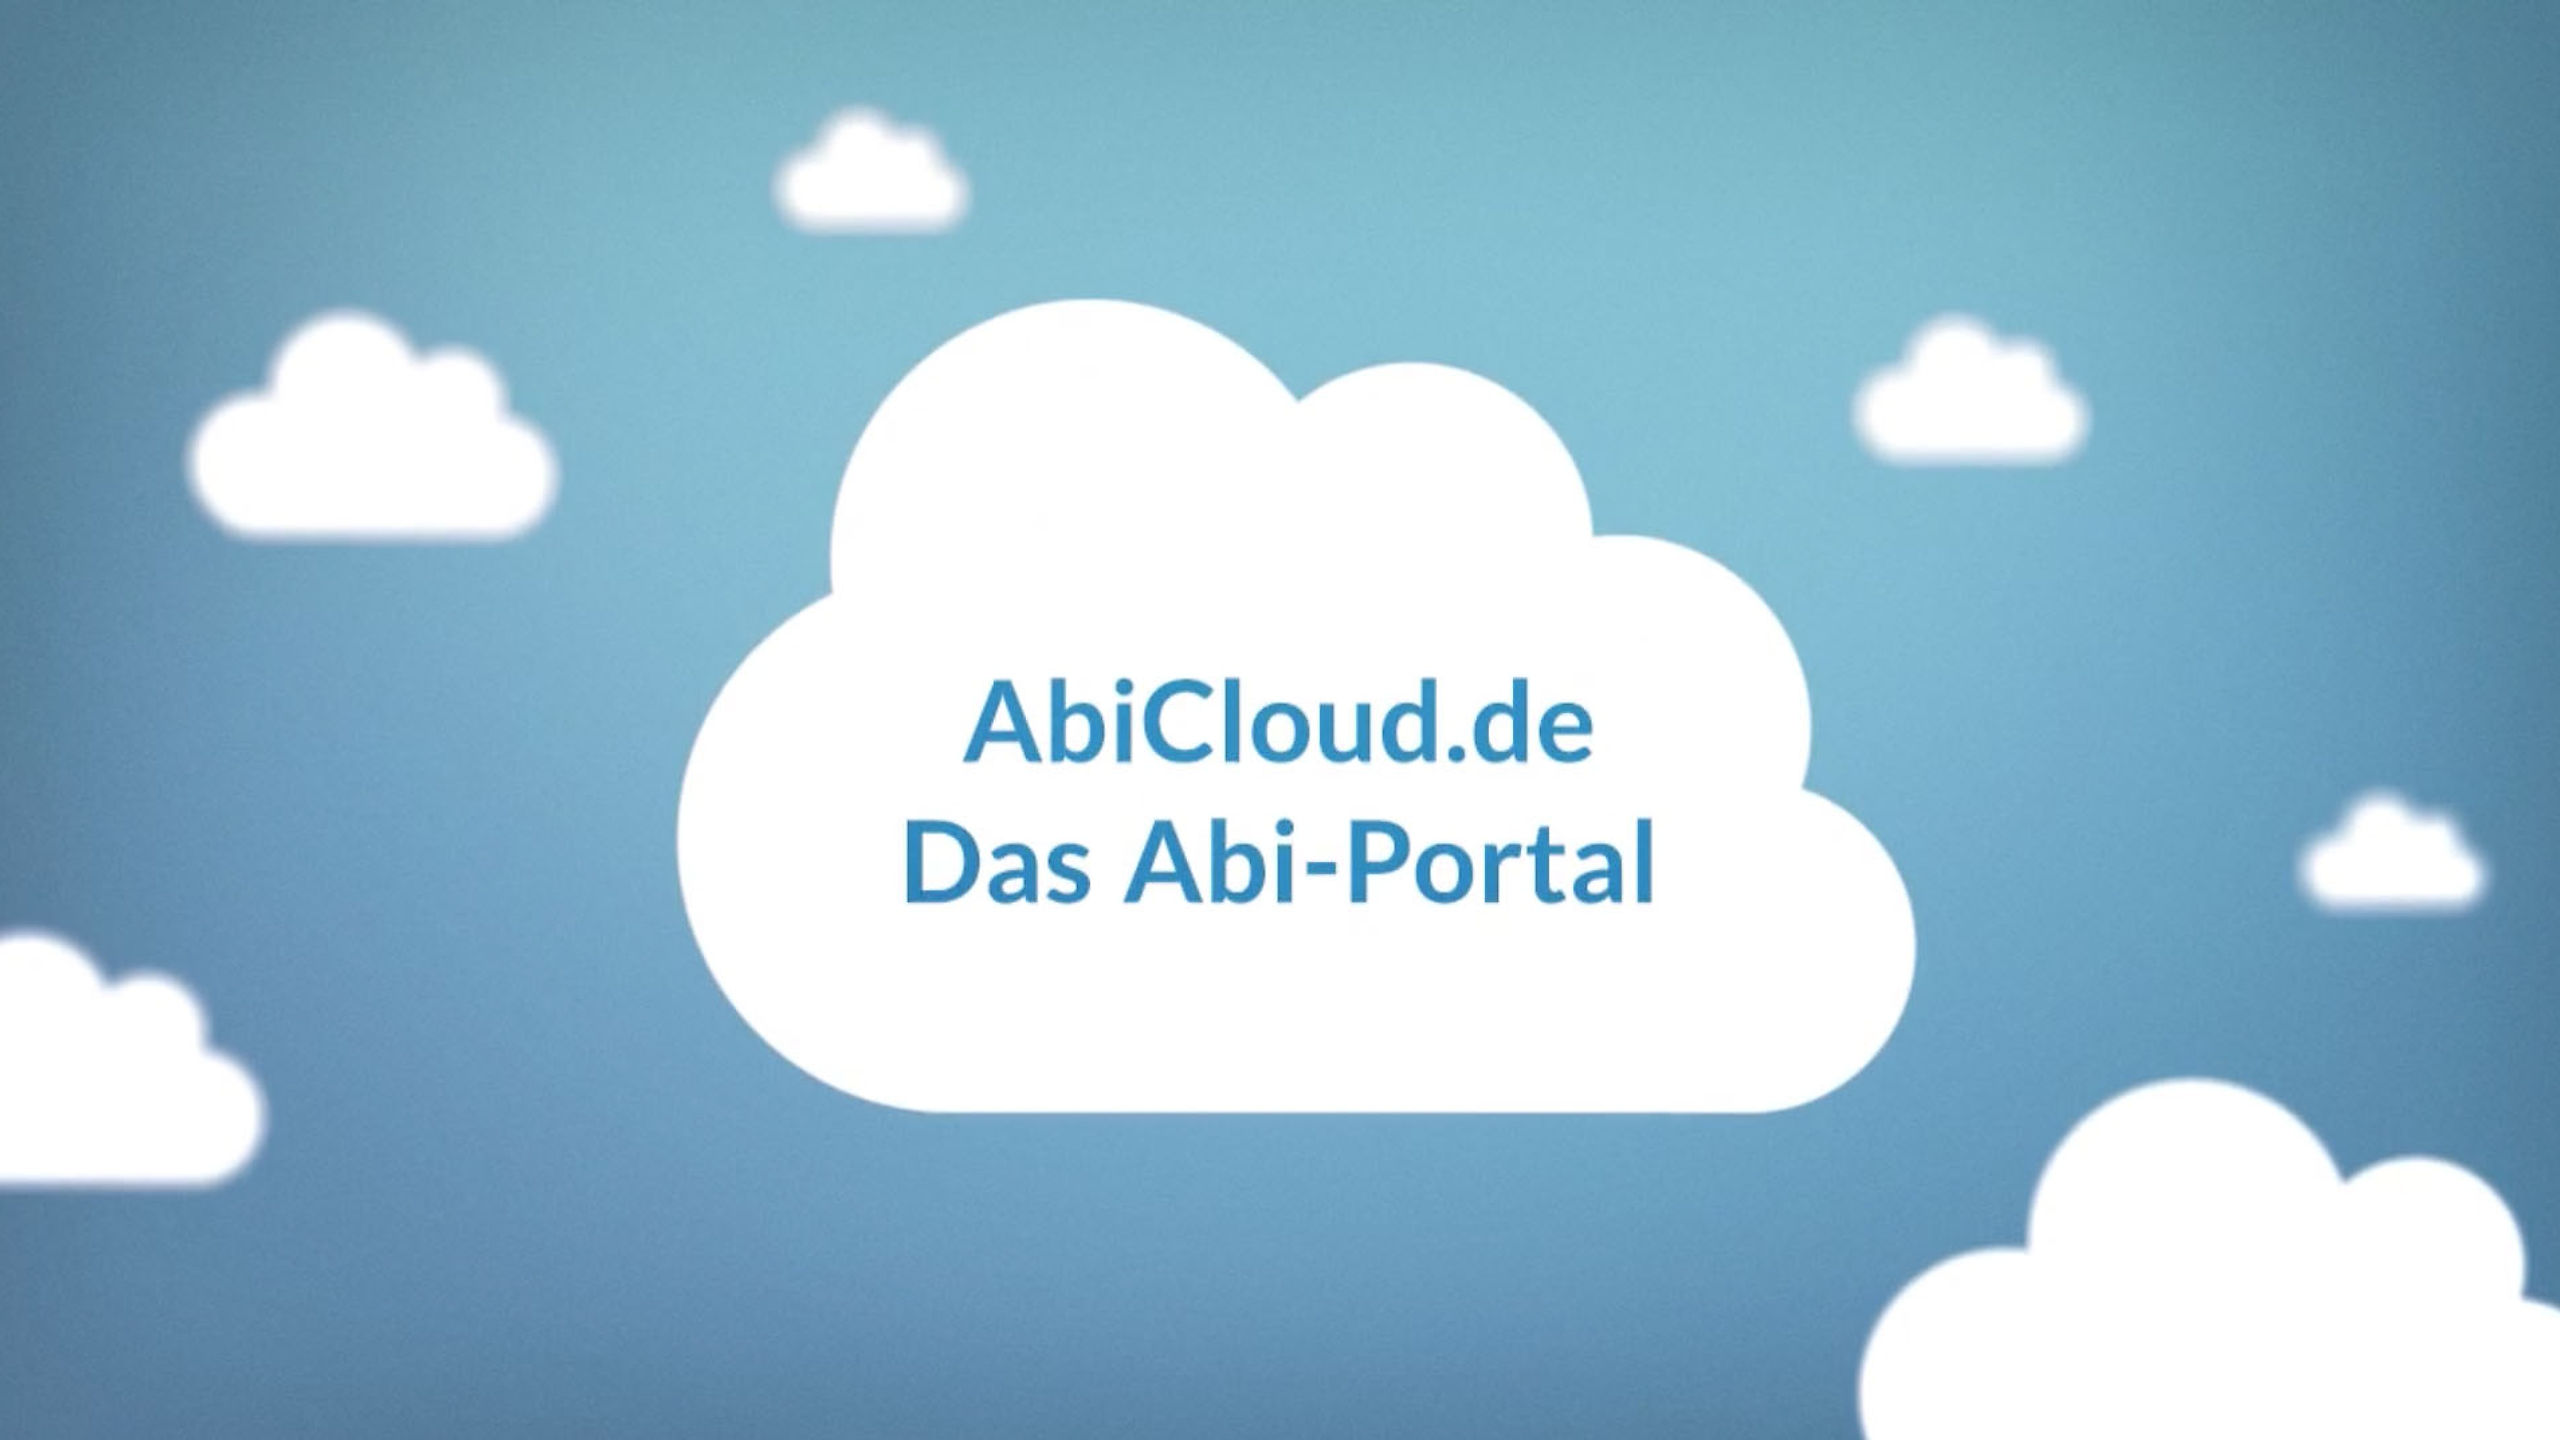 AbiCloud - Das Abi-Portal